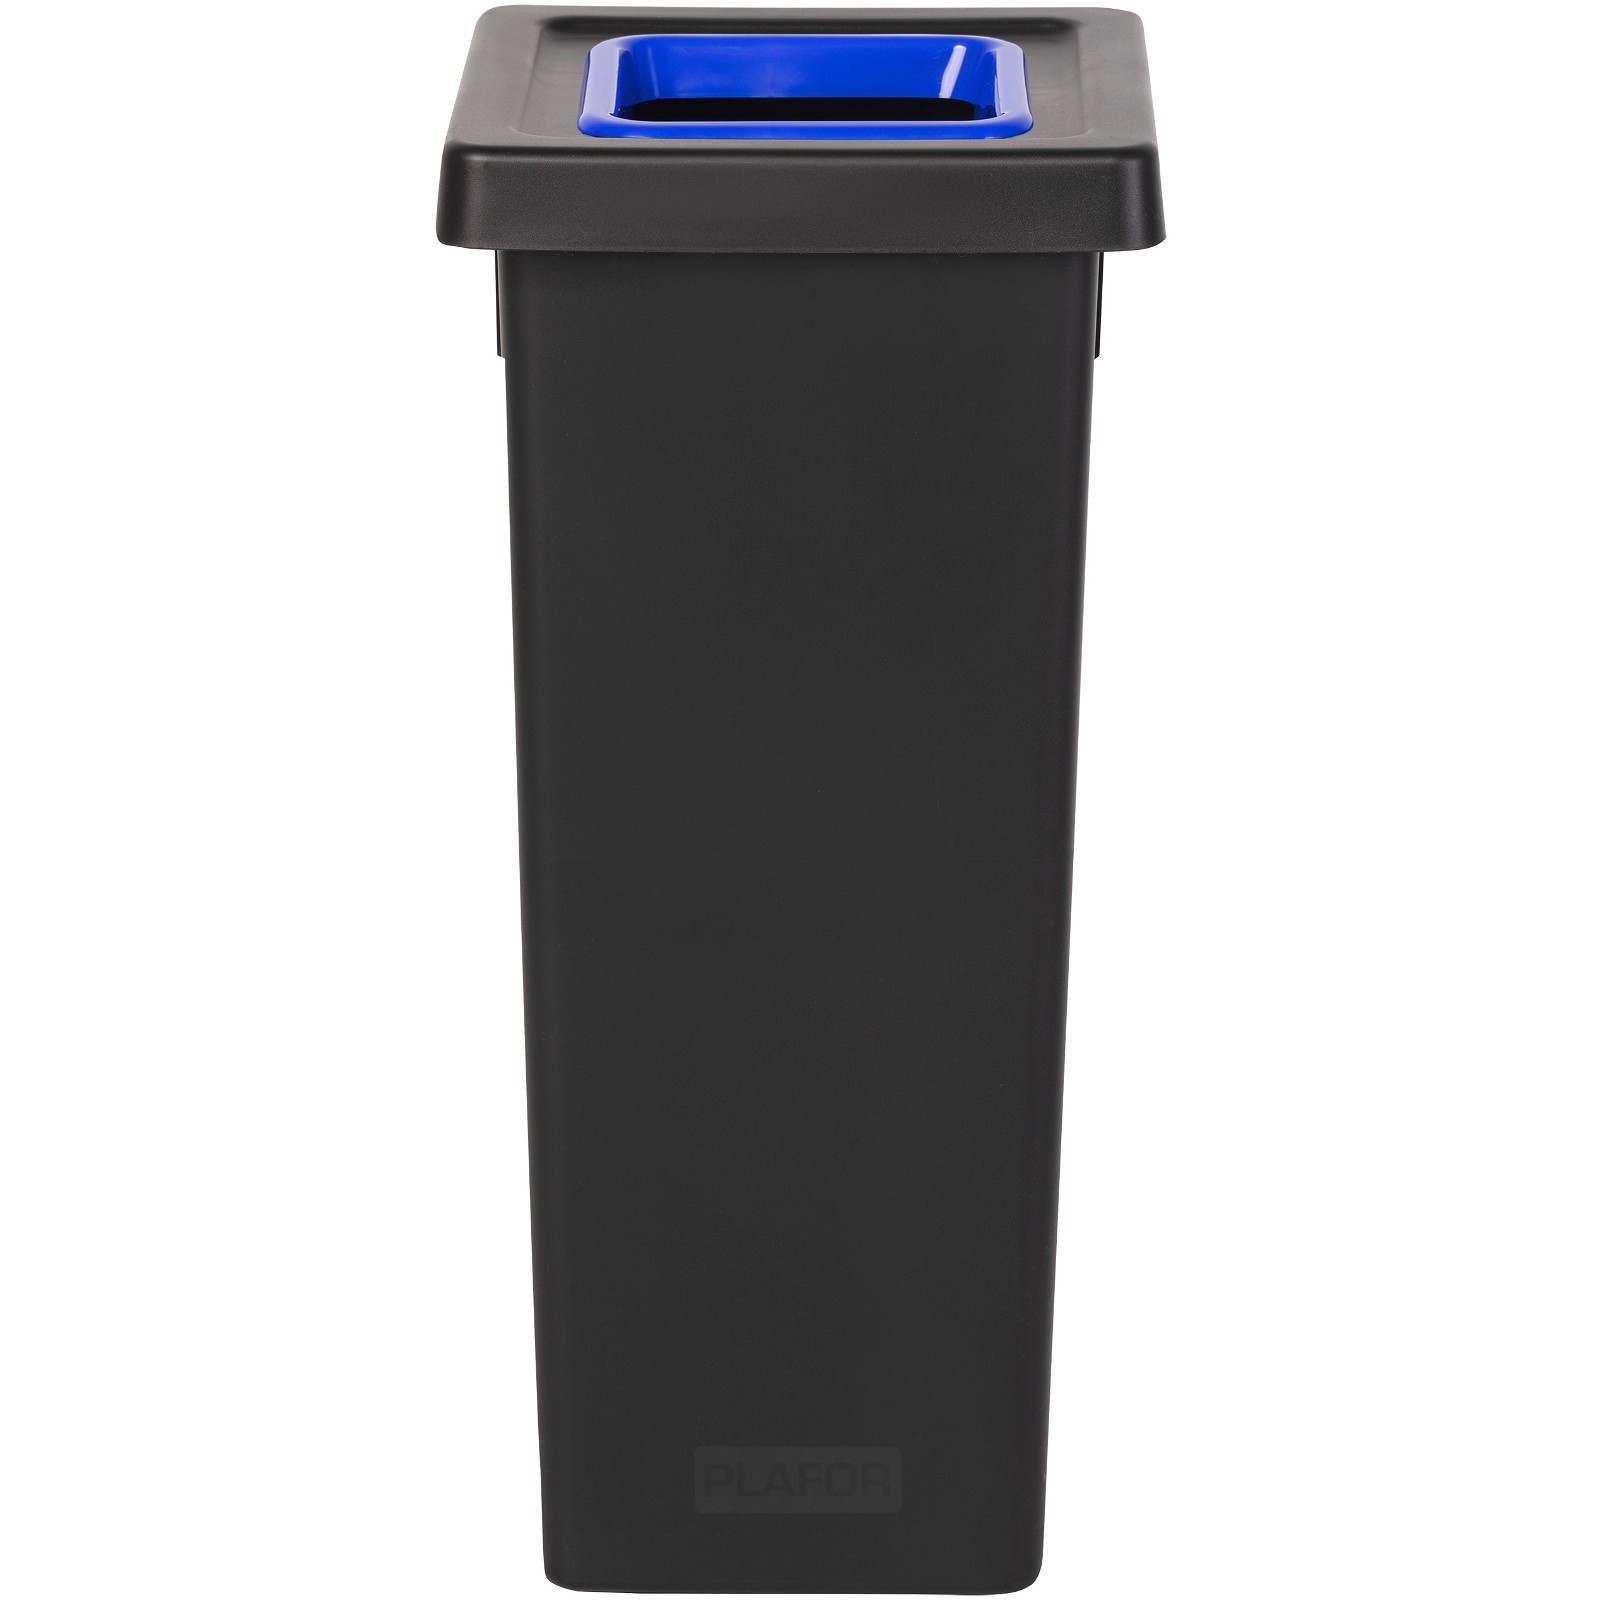 Style affaldsspand 53L blå